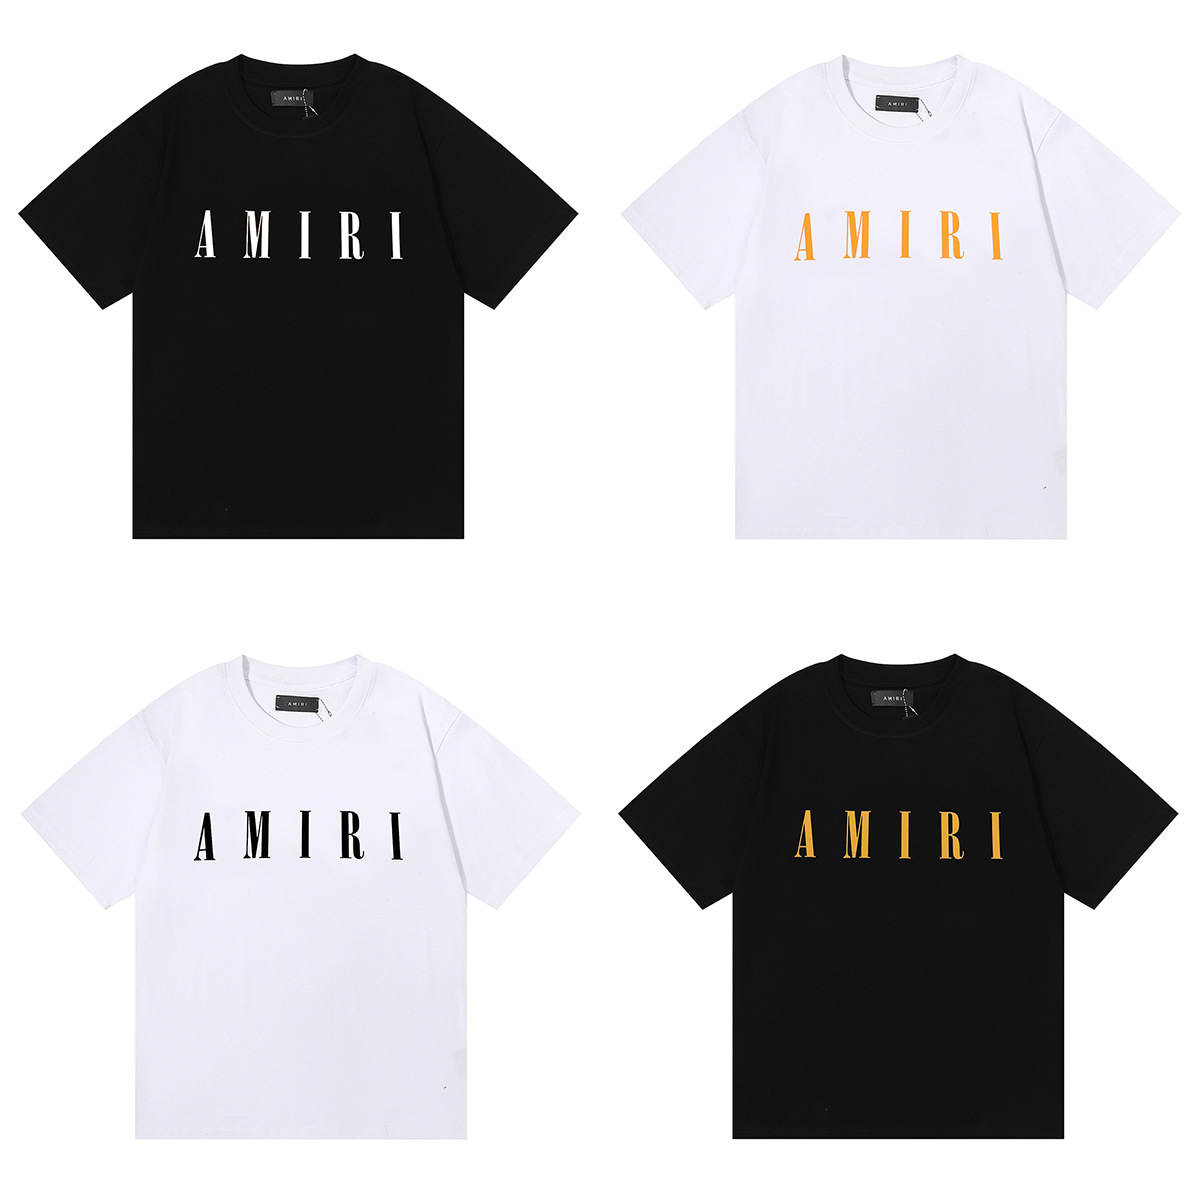 版本夏季新款美潮AMIRI经典基础款简约字母LOGO女宽松短袖T恤